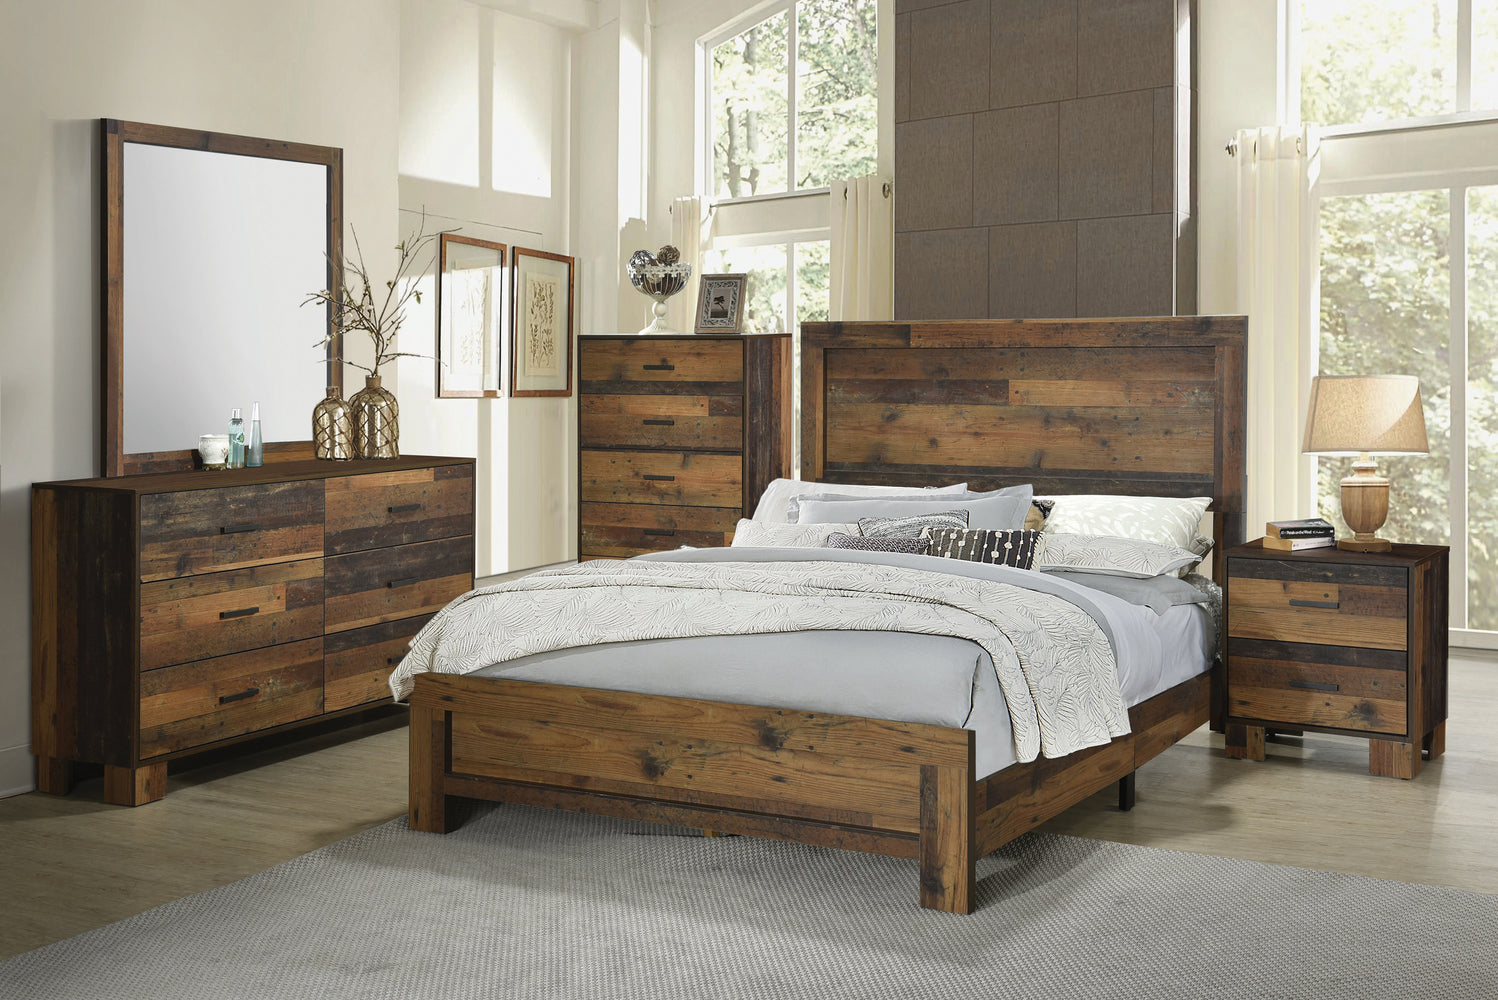 Sidney 4 Piece Panel Bedroom Set Rustic Pine